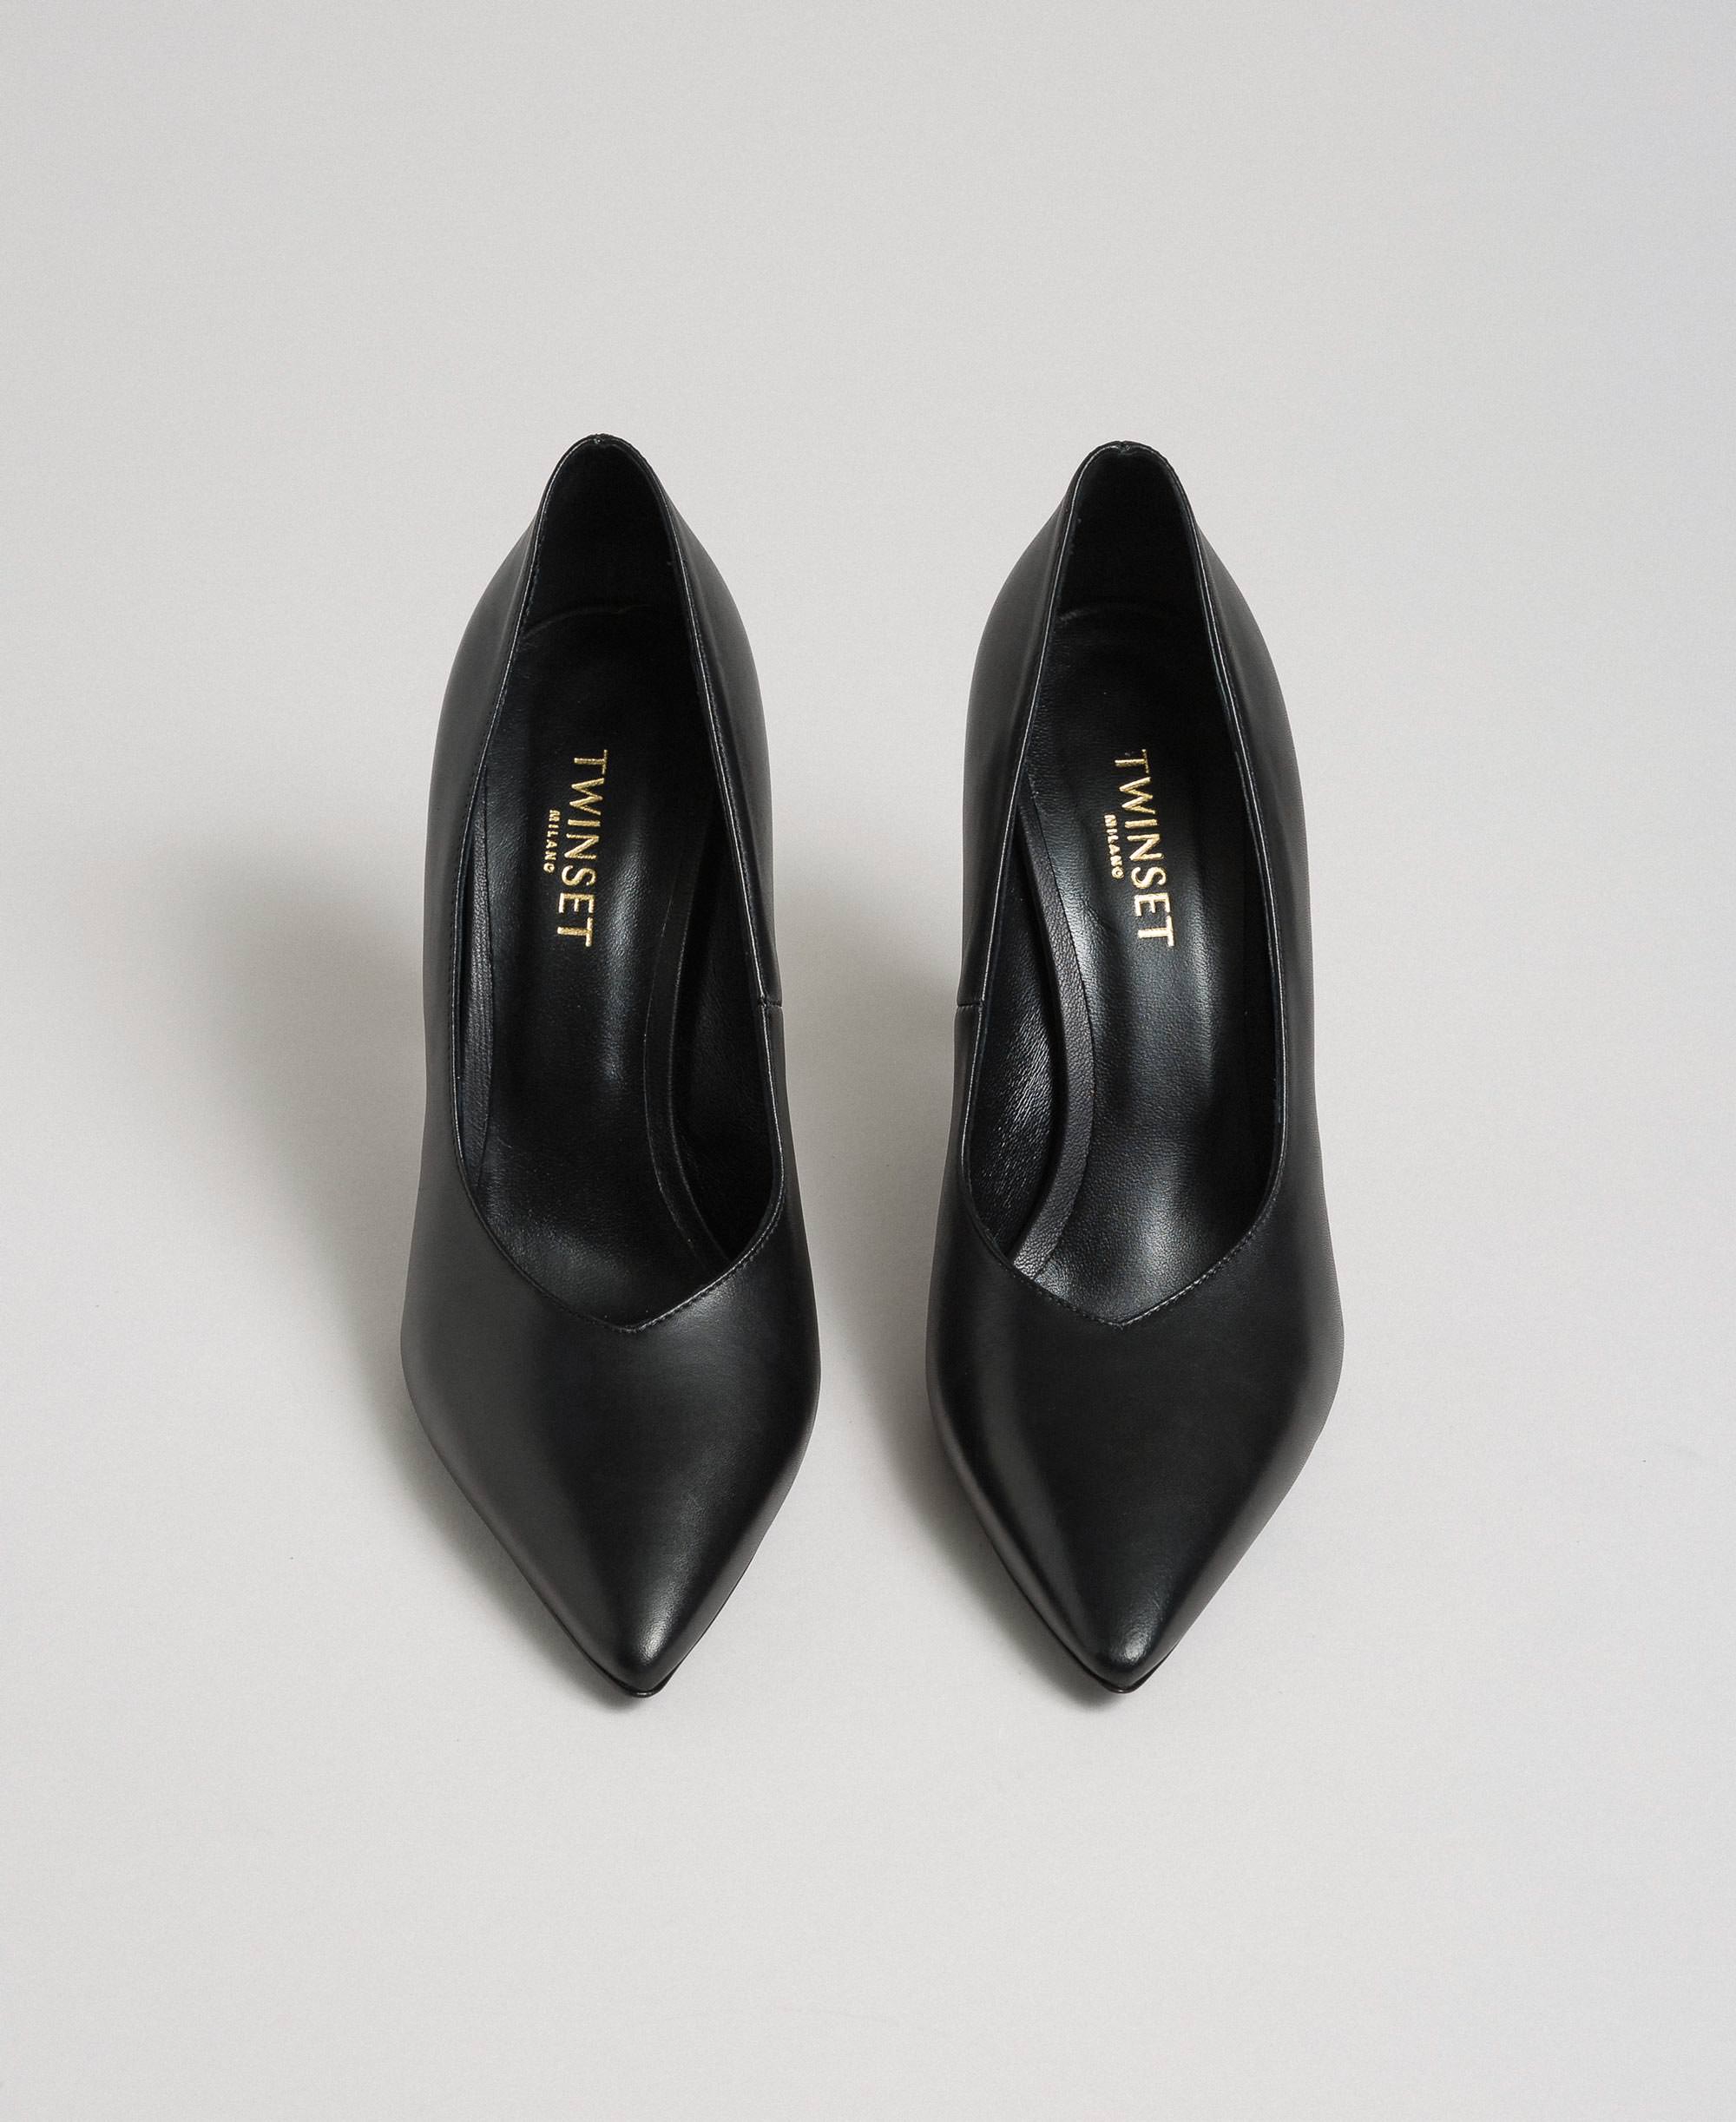 Escarpins Cuir Twinset en coloris Noir Femme Chaussures Chaussures à talons Escarpins 